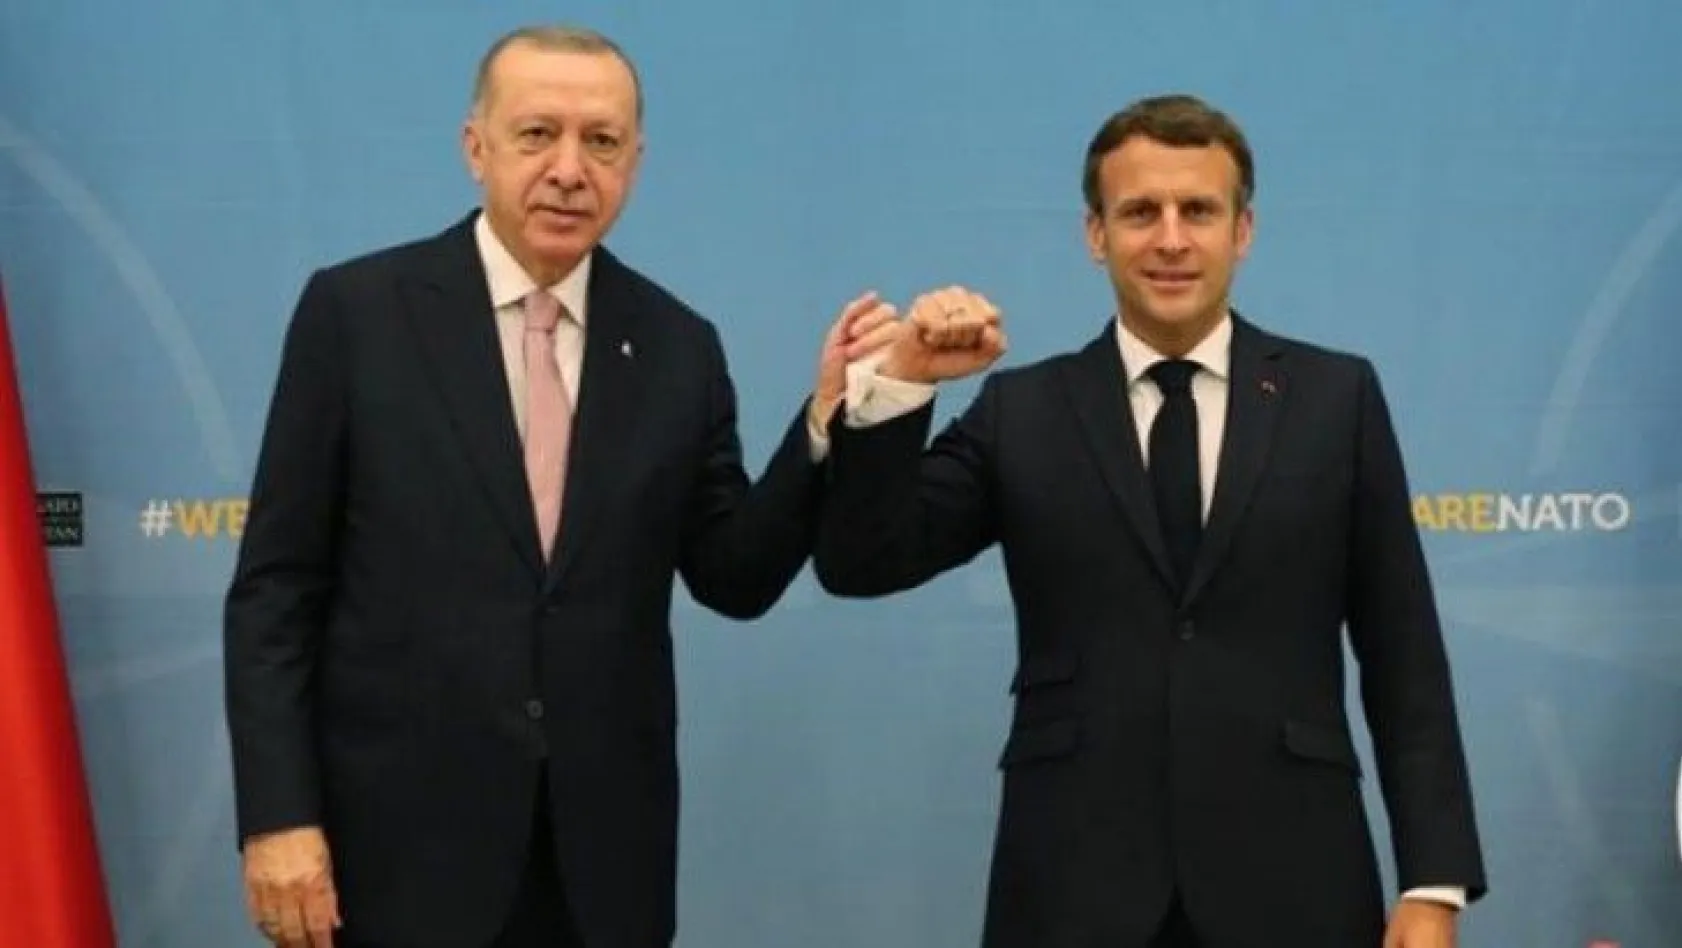 NATO Liderler Zirvesi'nde Erdoğan'la bir araya gelen Macron'dan ilk açıklama